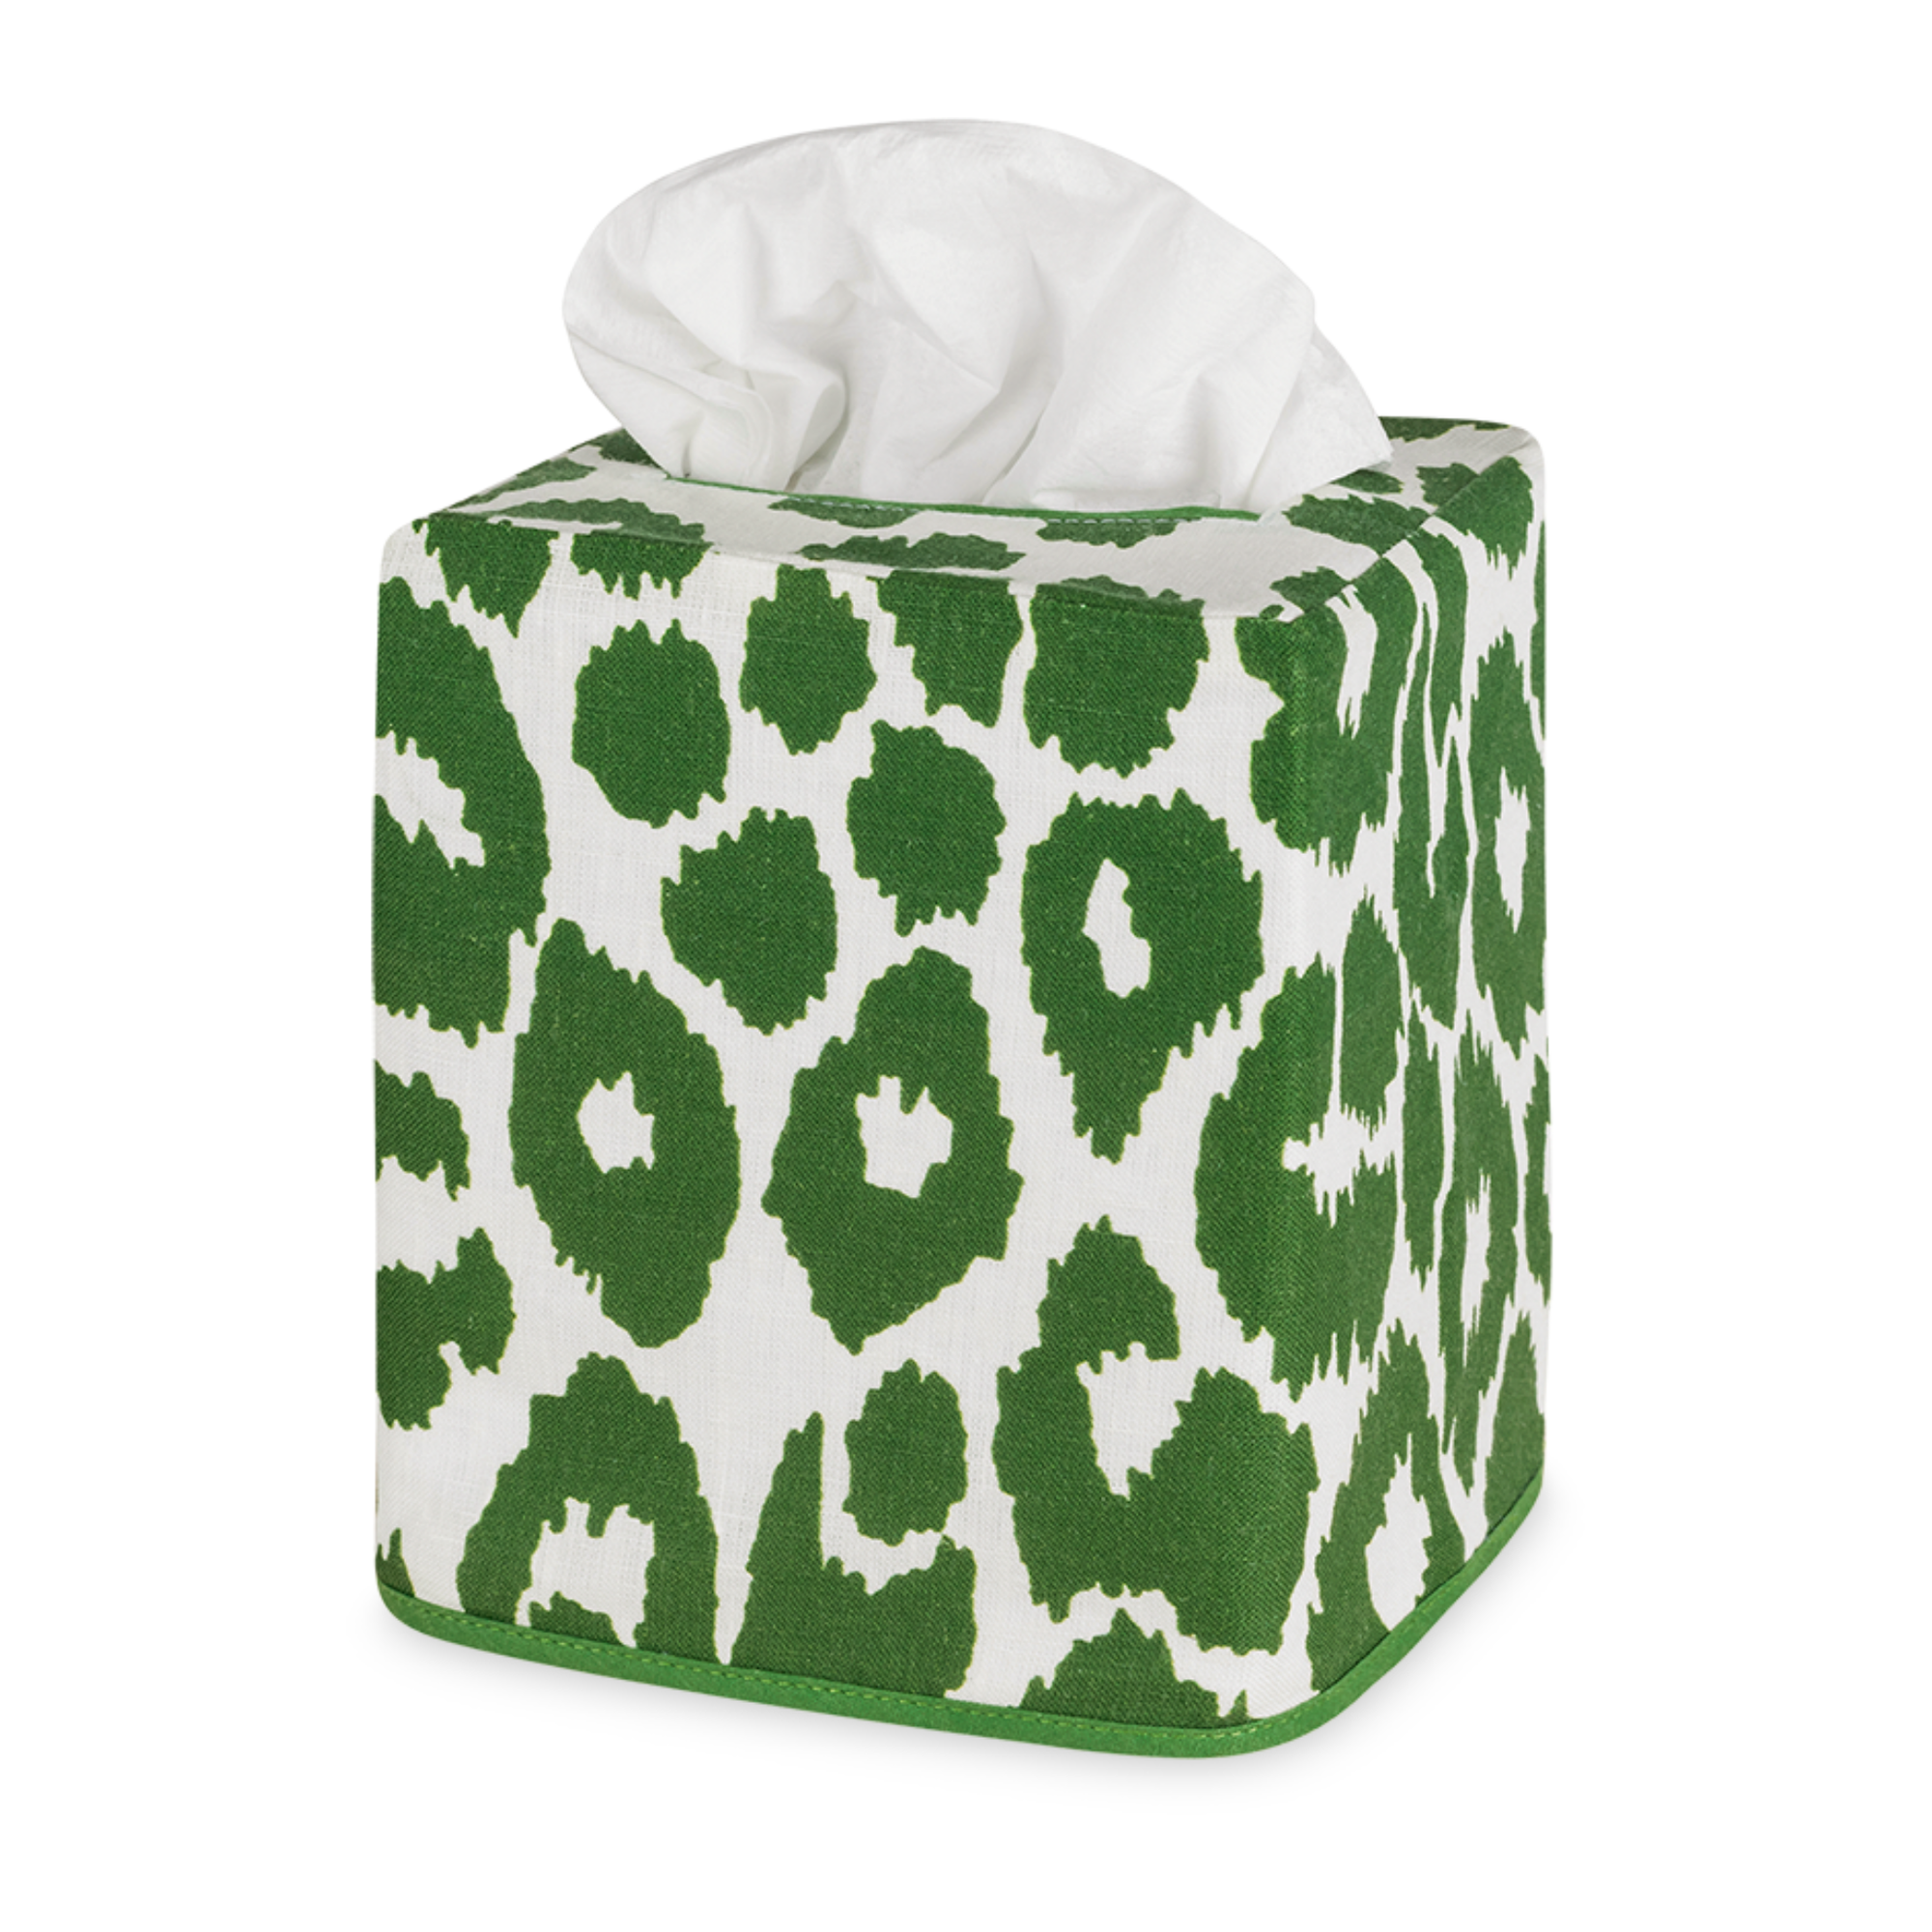 Silo of Matouk Iconic Leopard Tissue Box Cover in Green